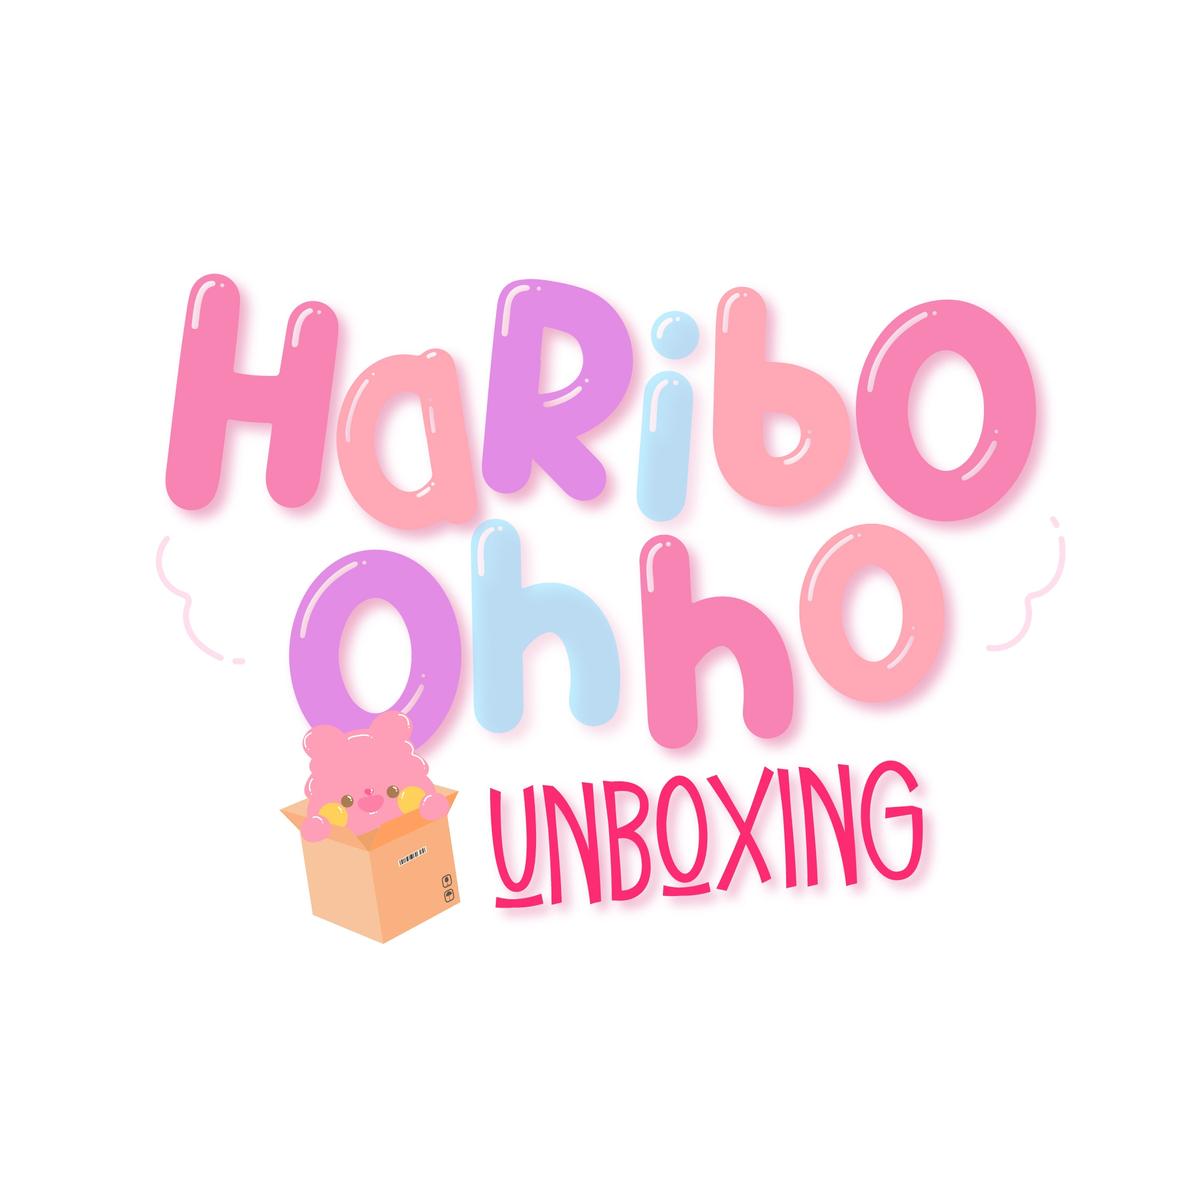 รูปภาพของ HariboohhoUnbox